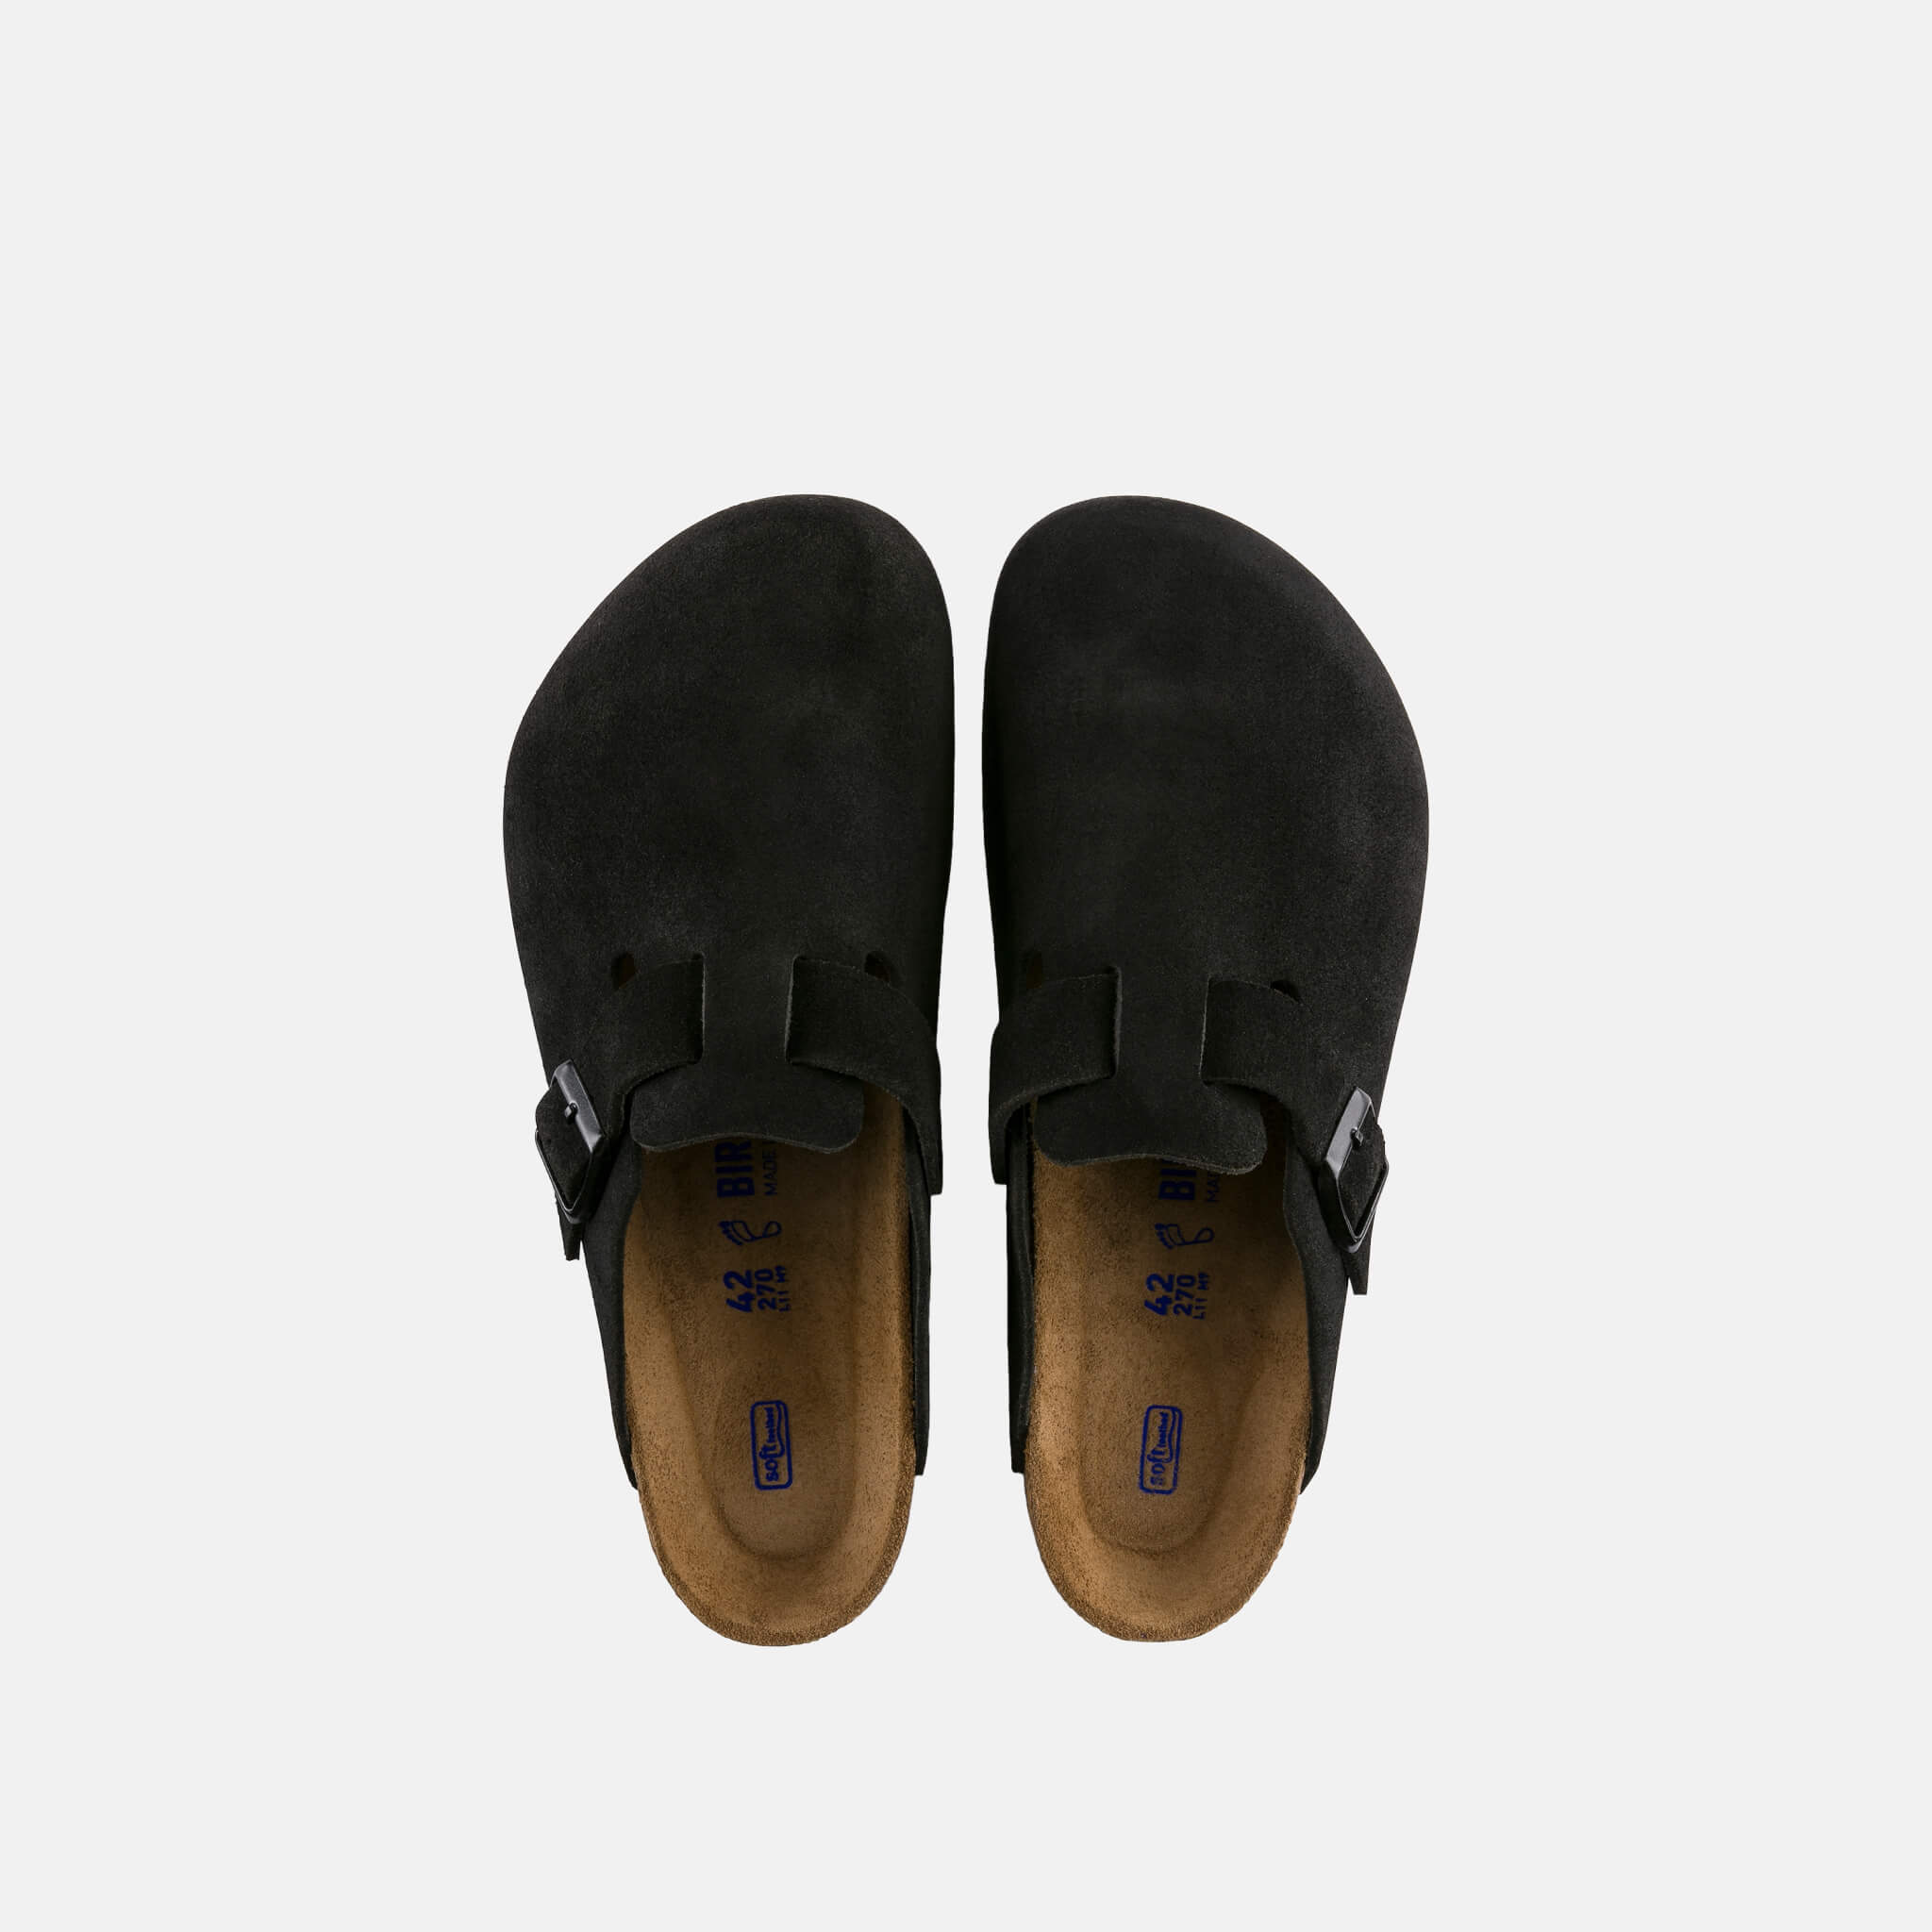 Černé pantofle Birkenstock Boston SFB Suede Leather